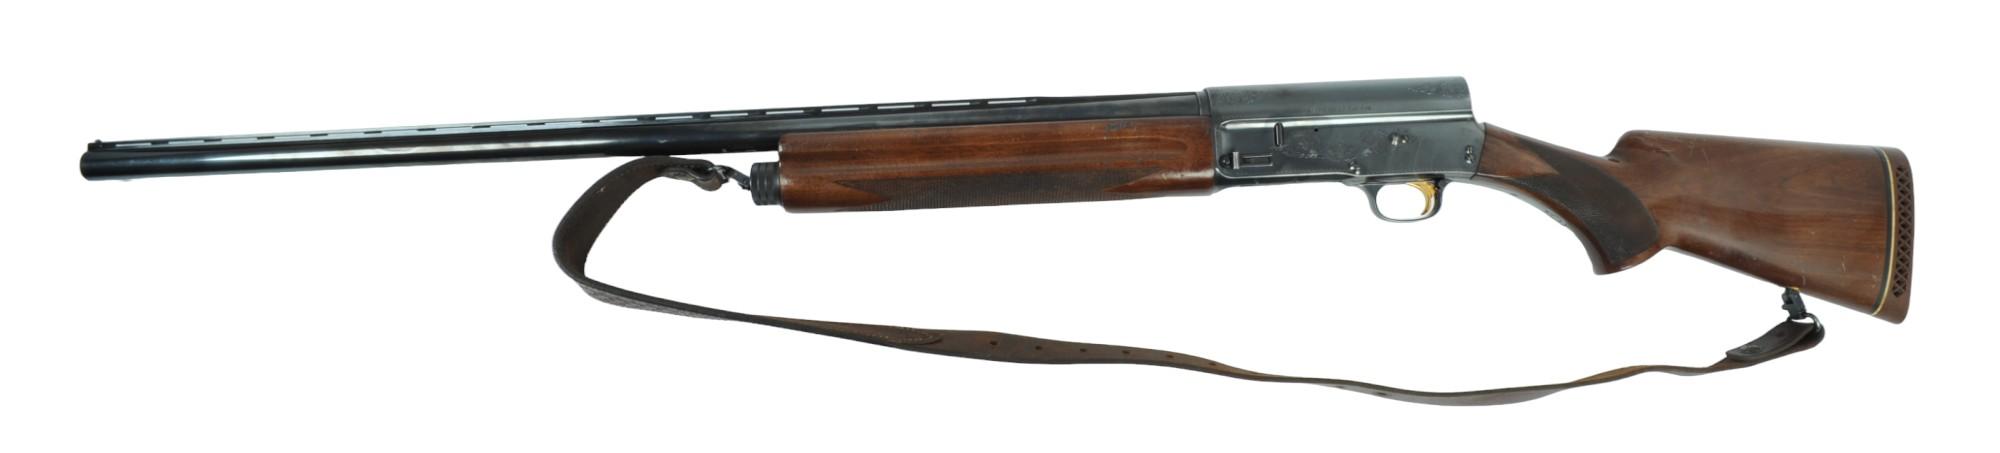 Japanese Browning A5 'Magnum Twelve' 12 Gauge Semi-auto Shotgun FFL Required: 01941PX151(VDM1)